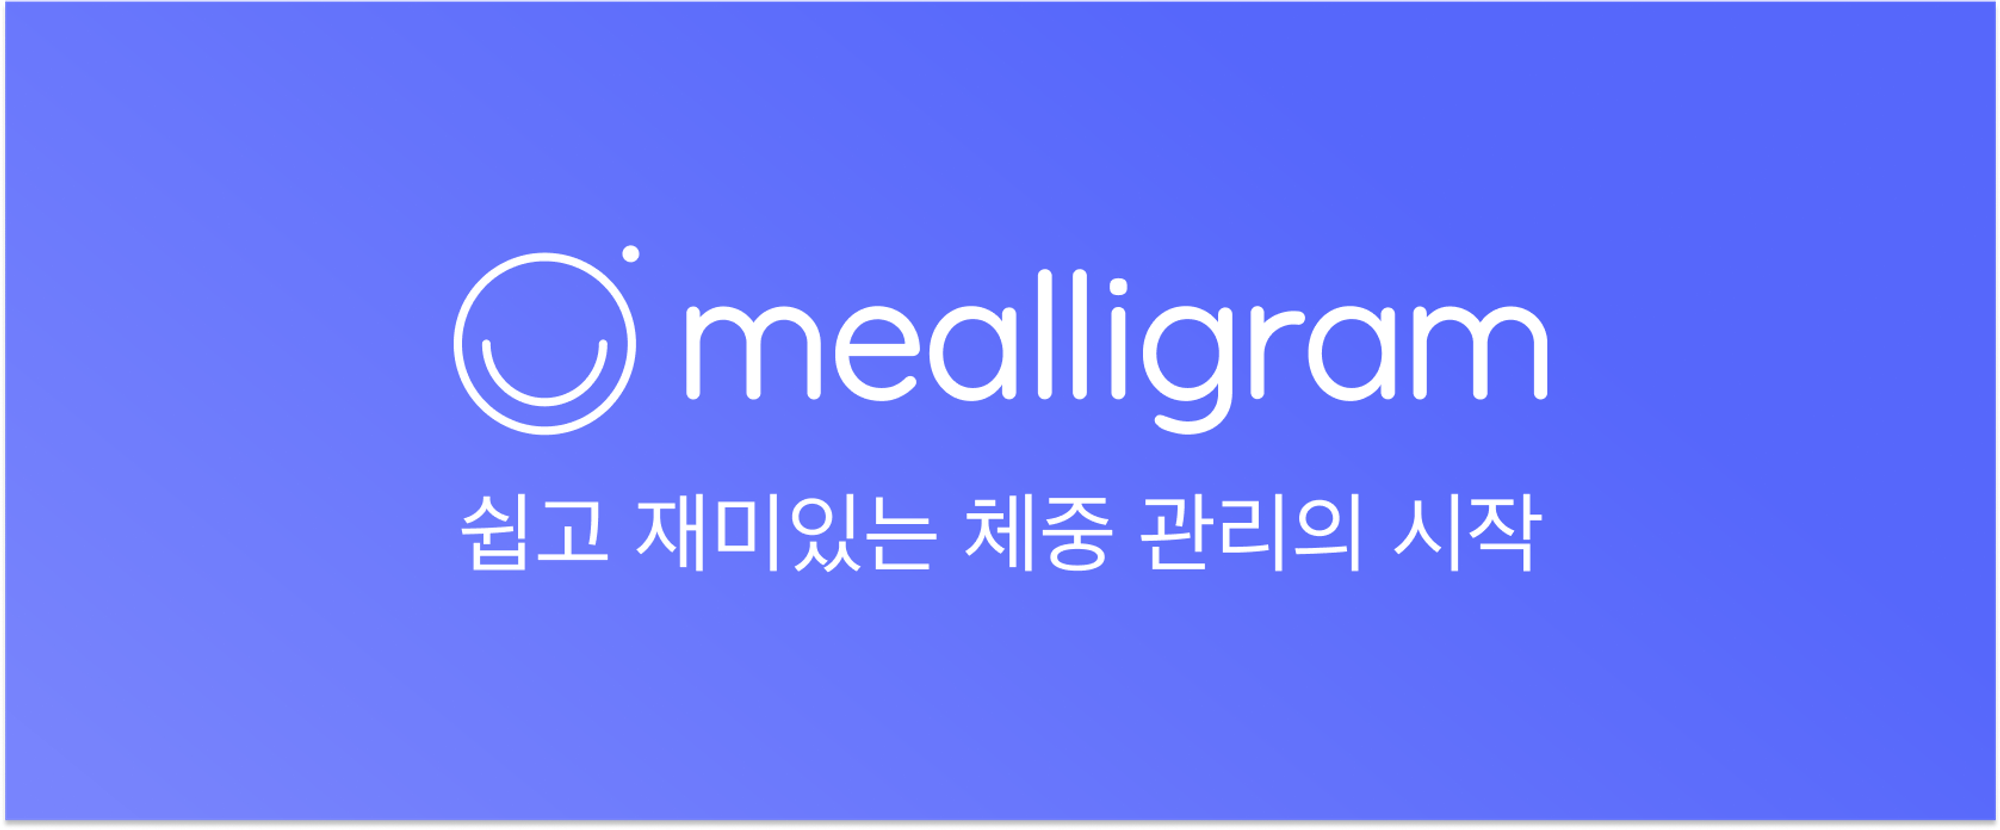 키토 다이어트, 키토 김밥, 저탄고지, 키토제닉, 키토 식단